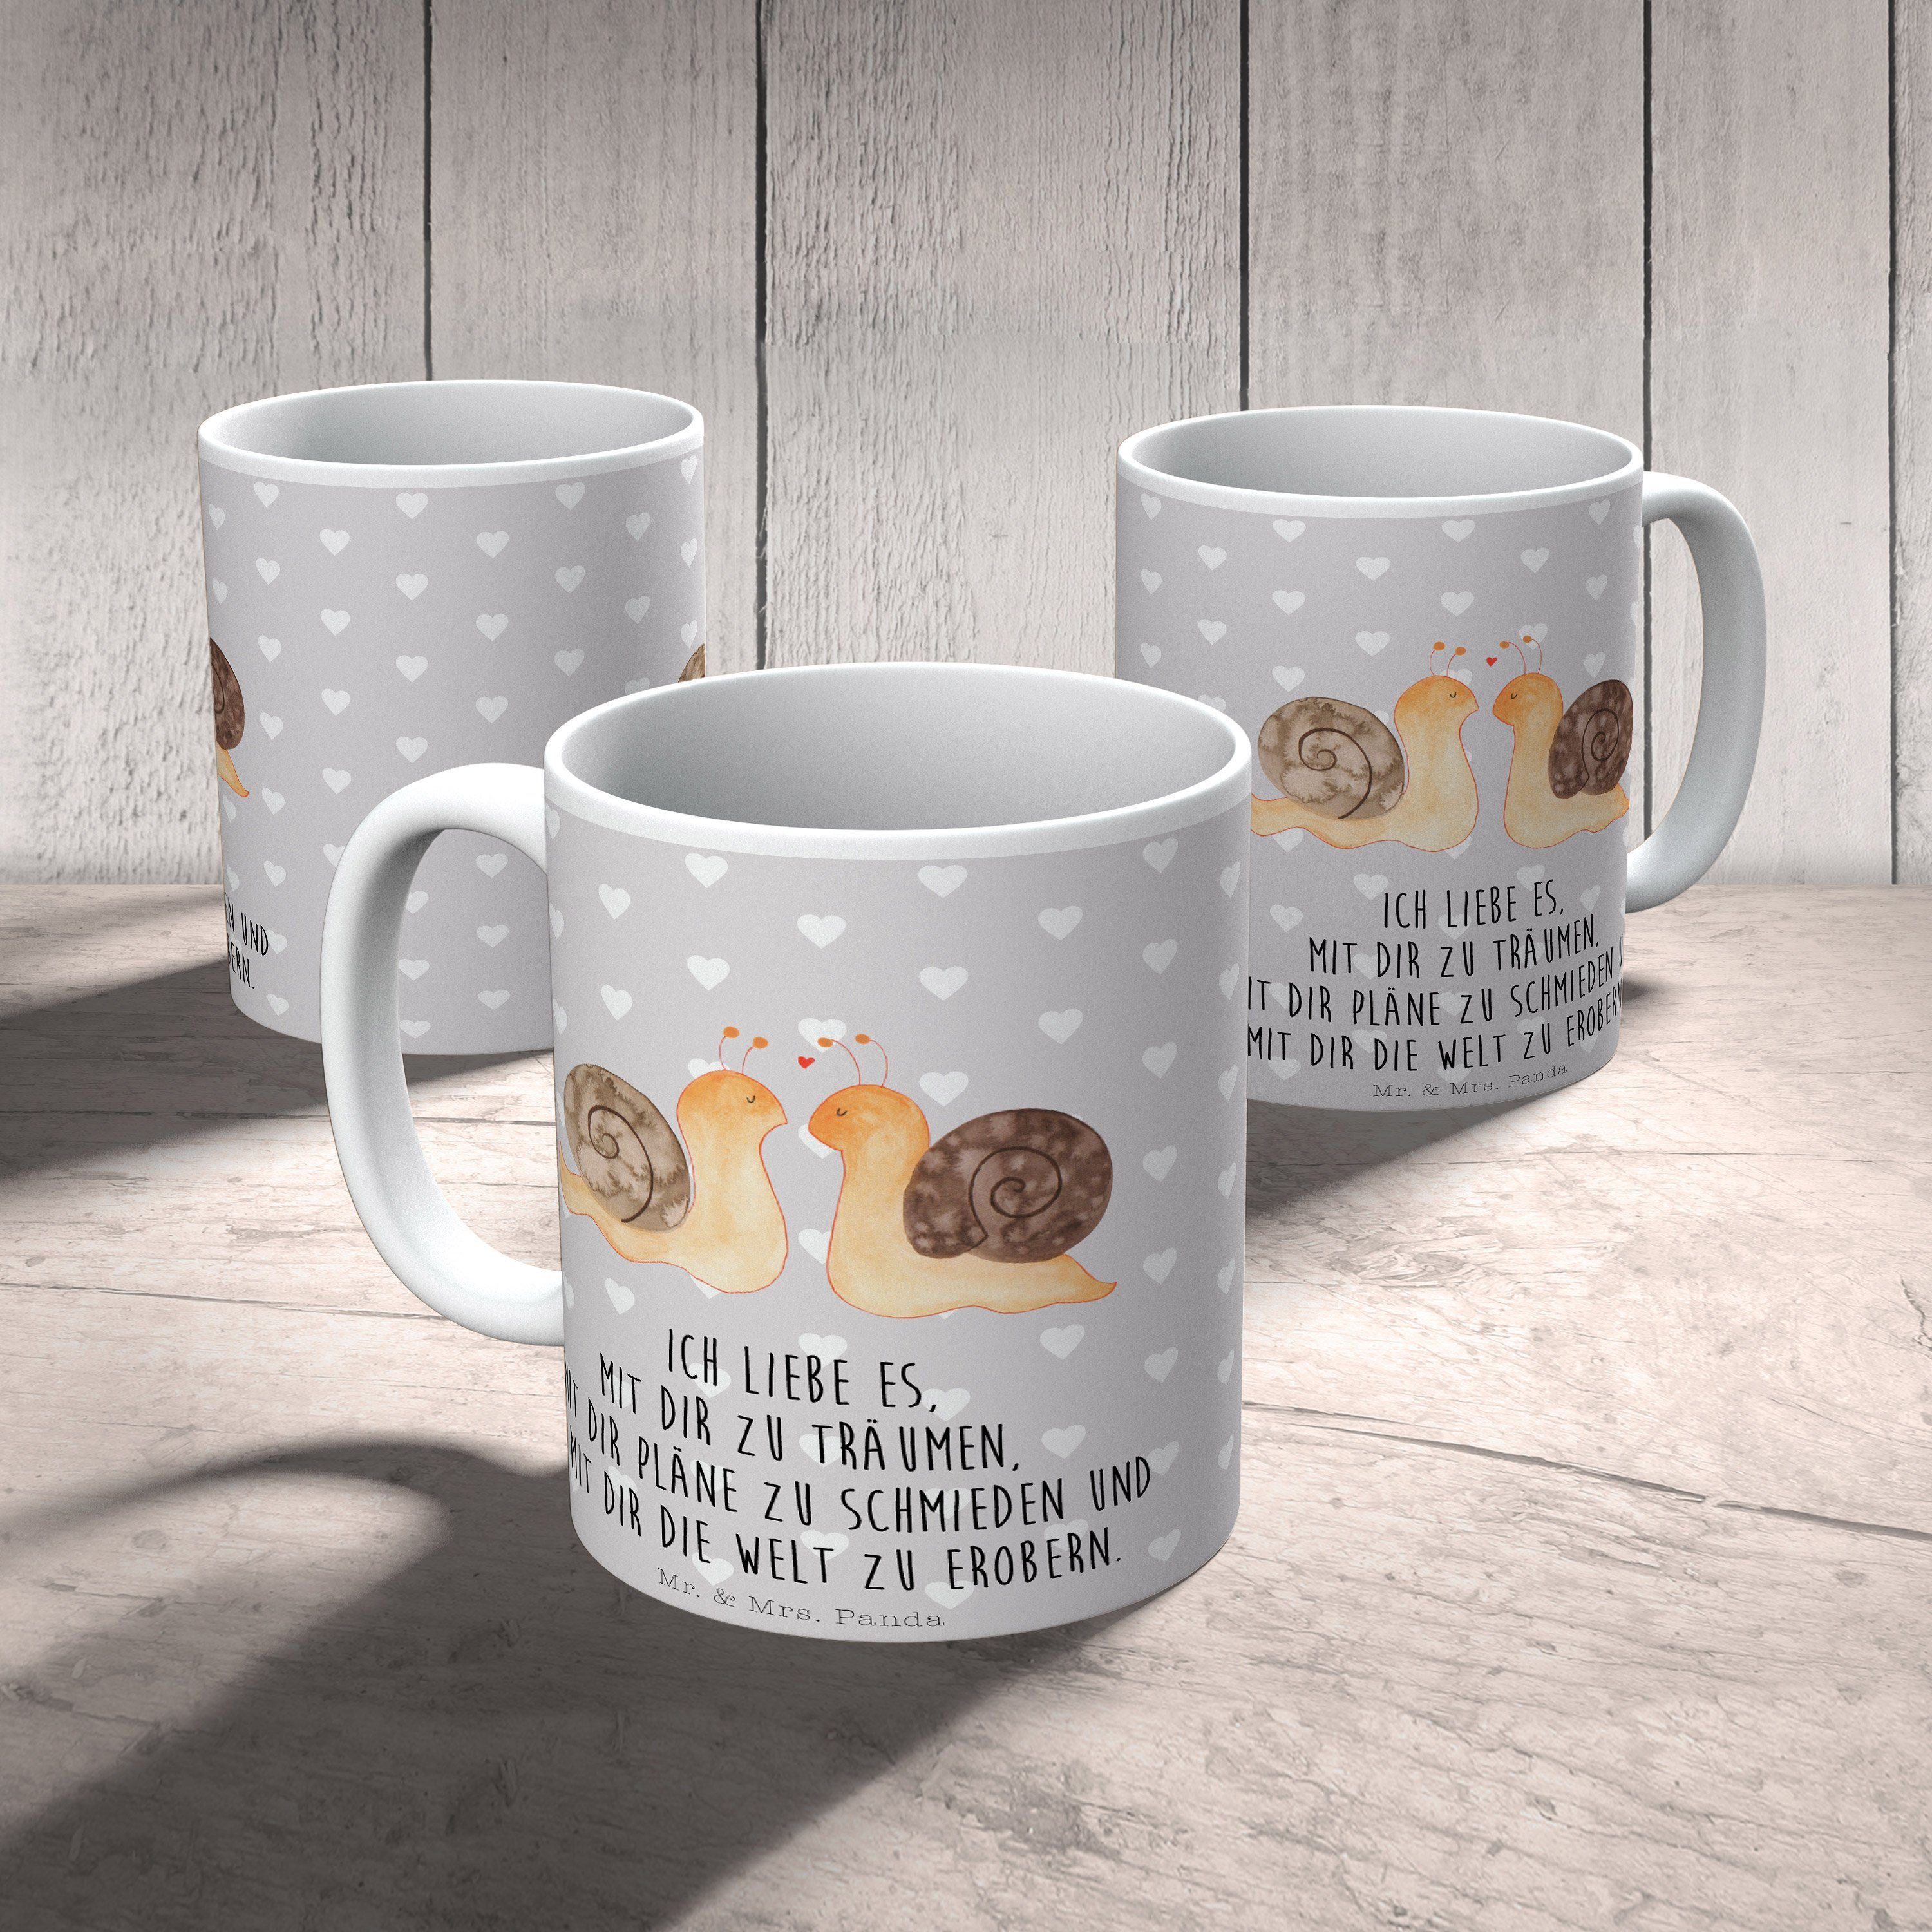 Pastell - Grau Tasse Sprüche, Geschenk, Mr. Mrs. & Tasse Tasse, Liebe Schnecken Panda Keramik - Paar,